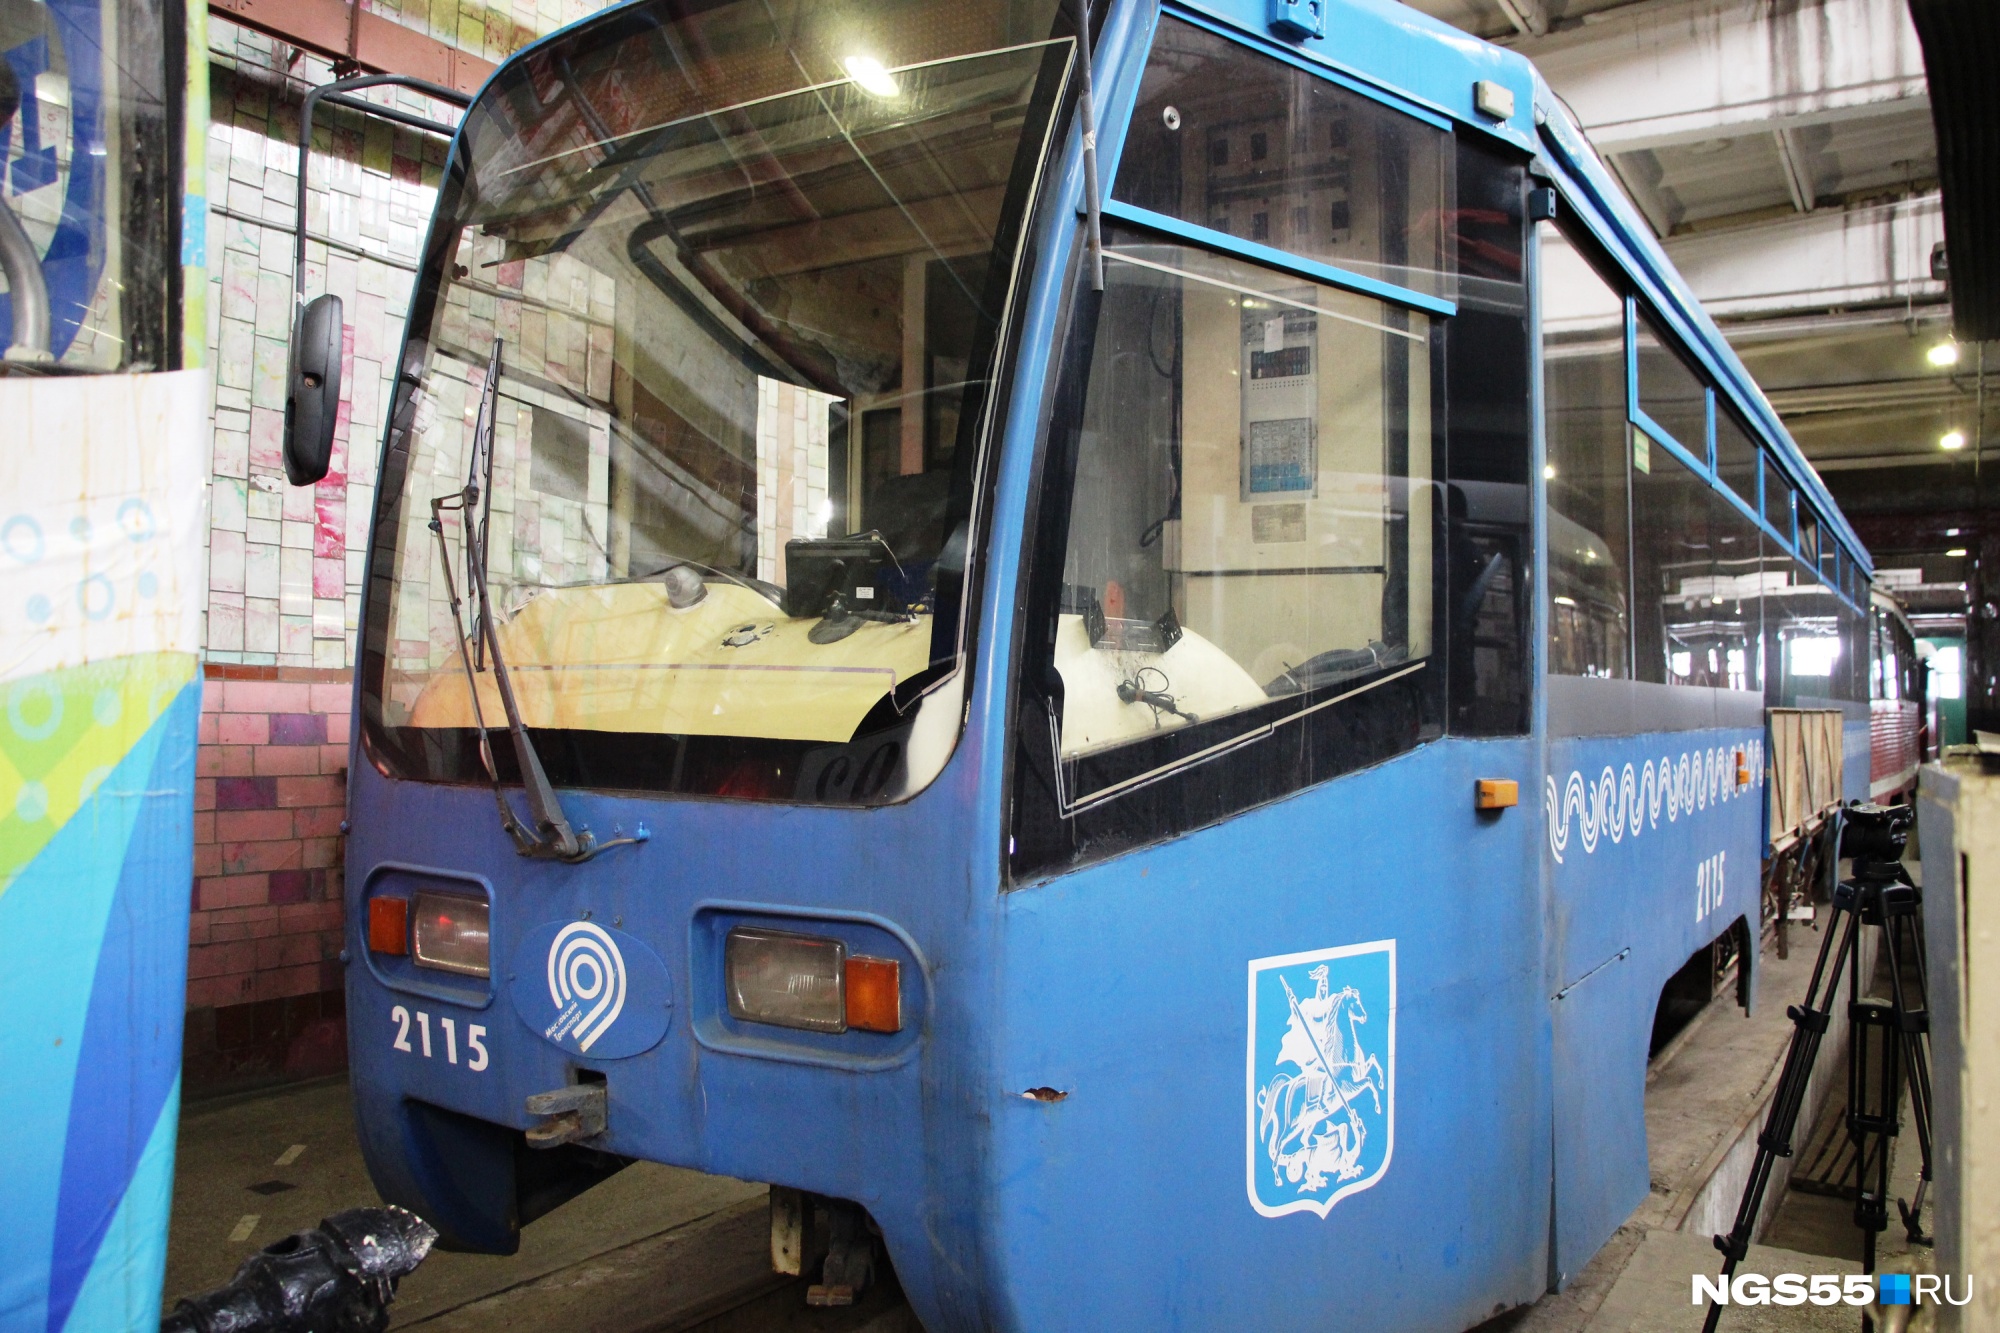 Несколько московских трамваев до сих пор не выпустили на маршруты. Их привезли в Омск прошлым летом